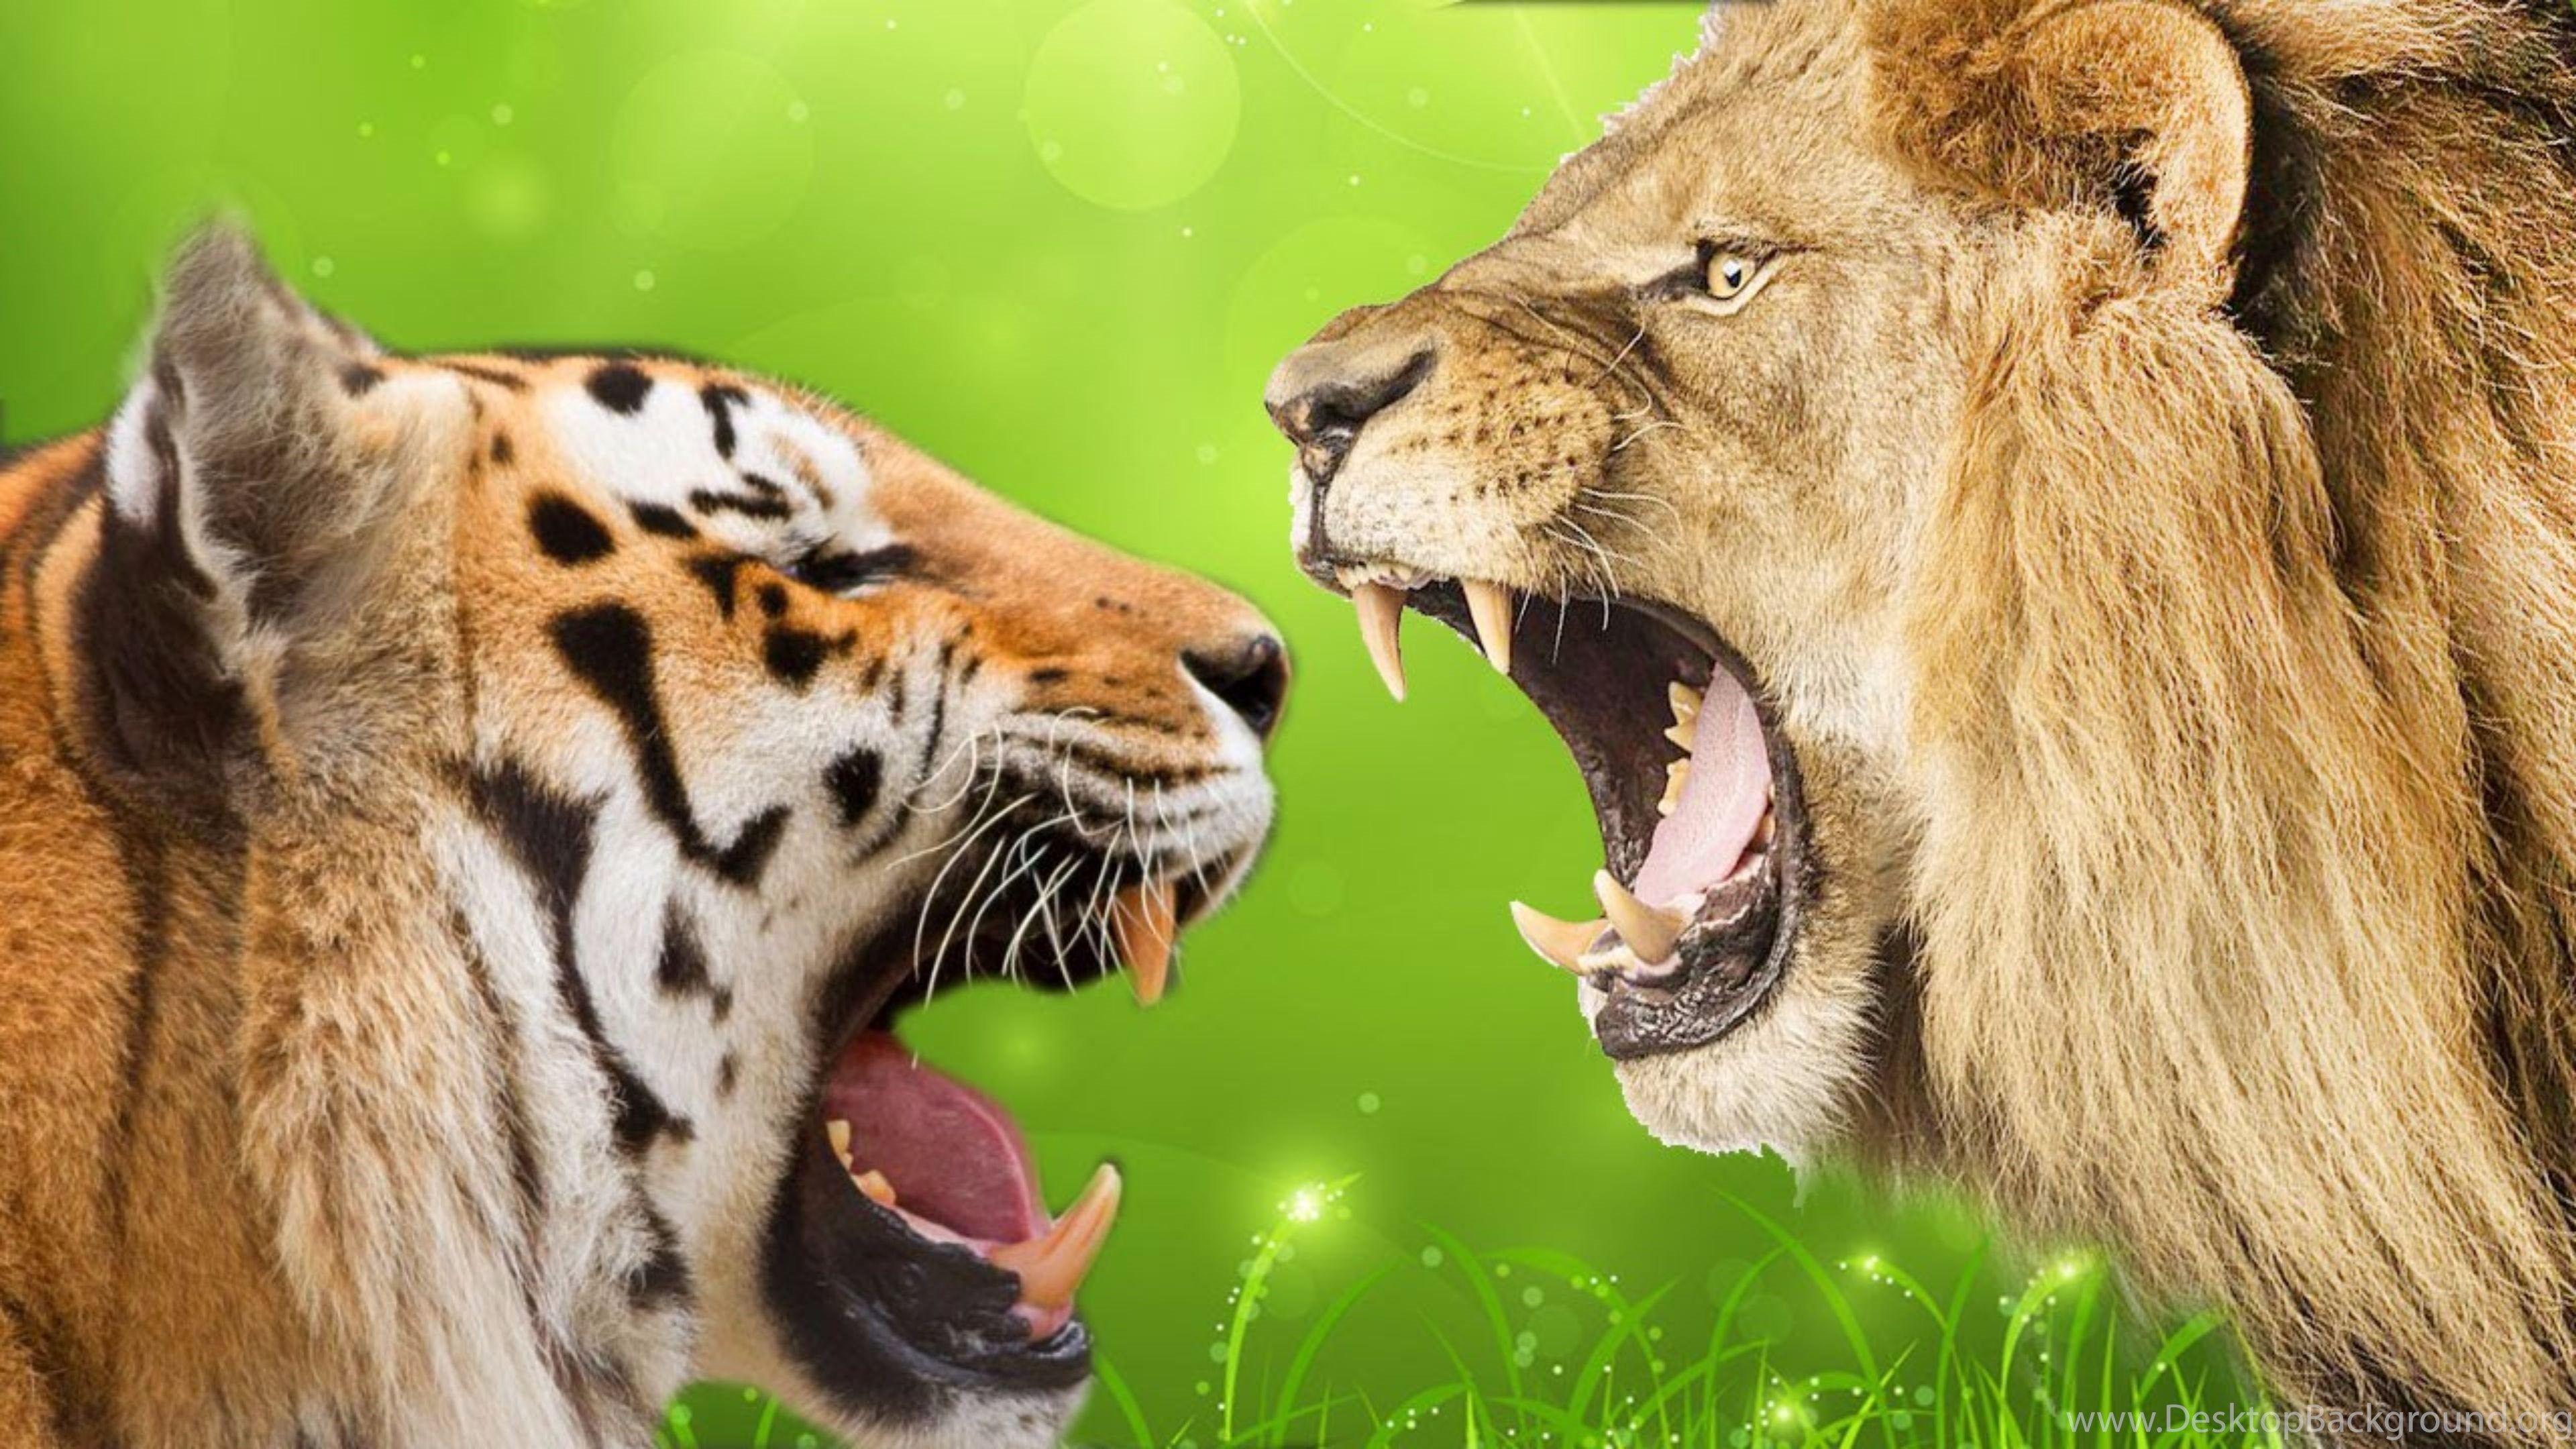 Tiger Vs Lion 4K Wallpaper Desktop Background